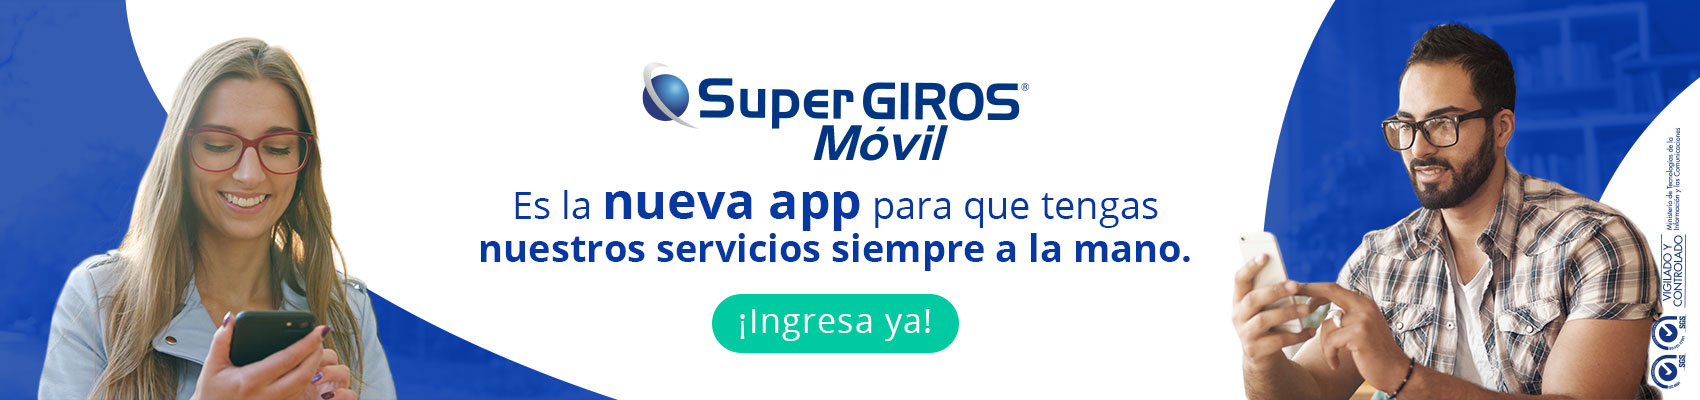 SuperGIROS Móvil es la nueva app para que tengas nuestros servicios siempre a la mano.